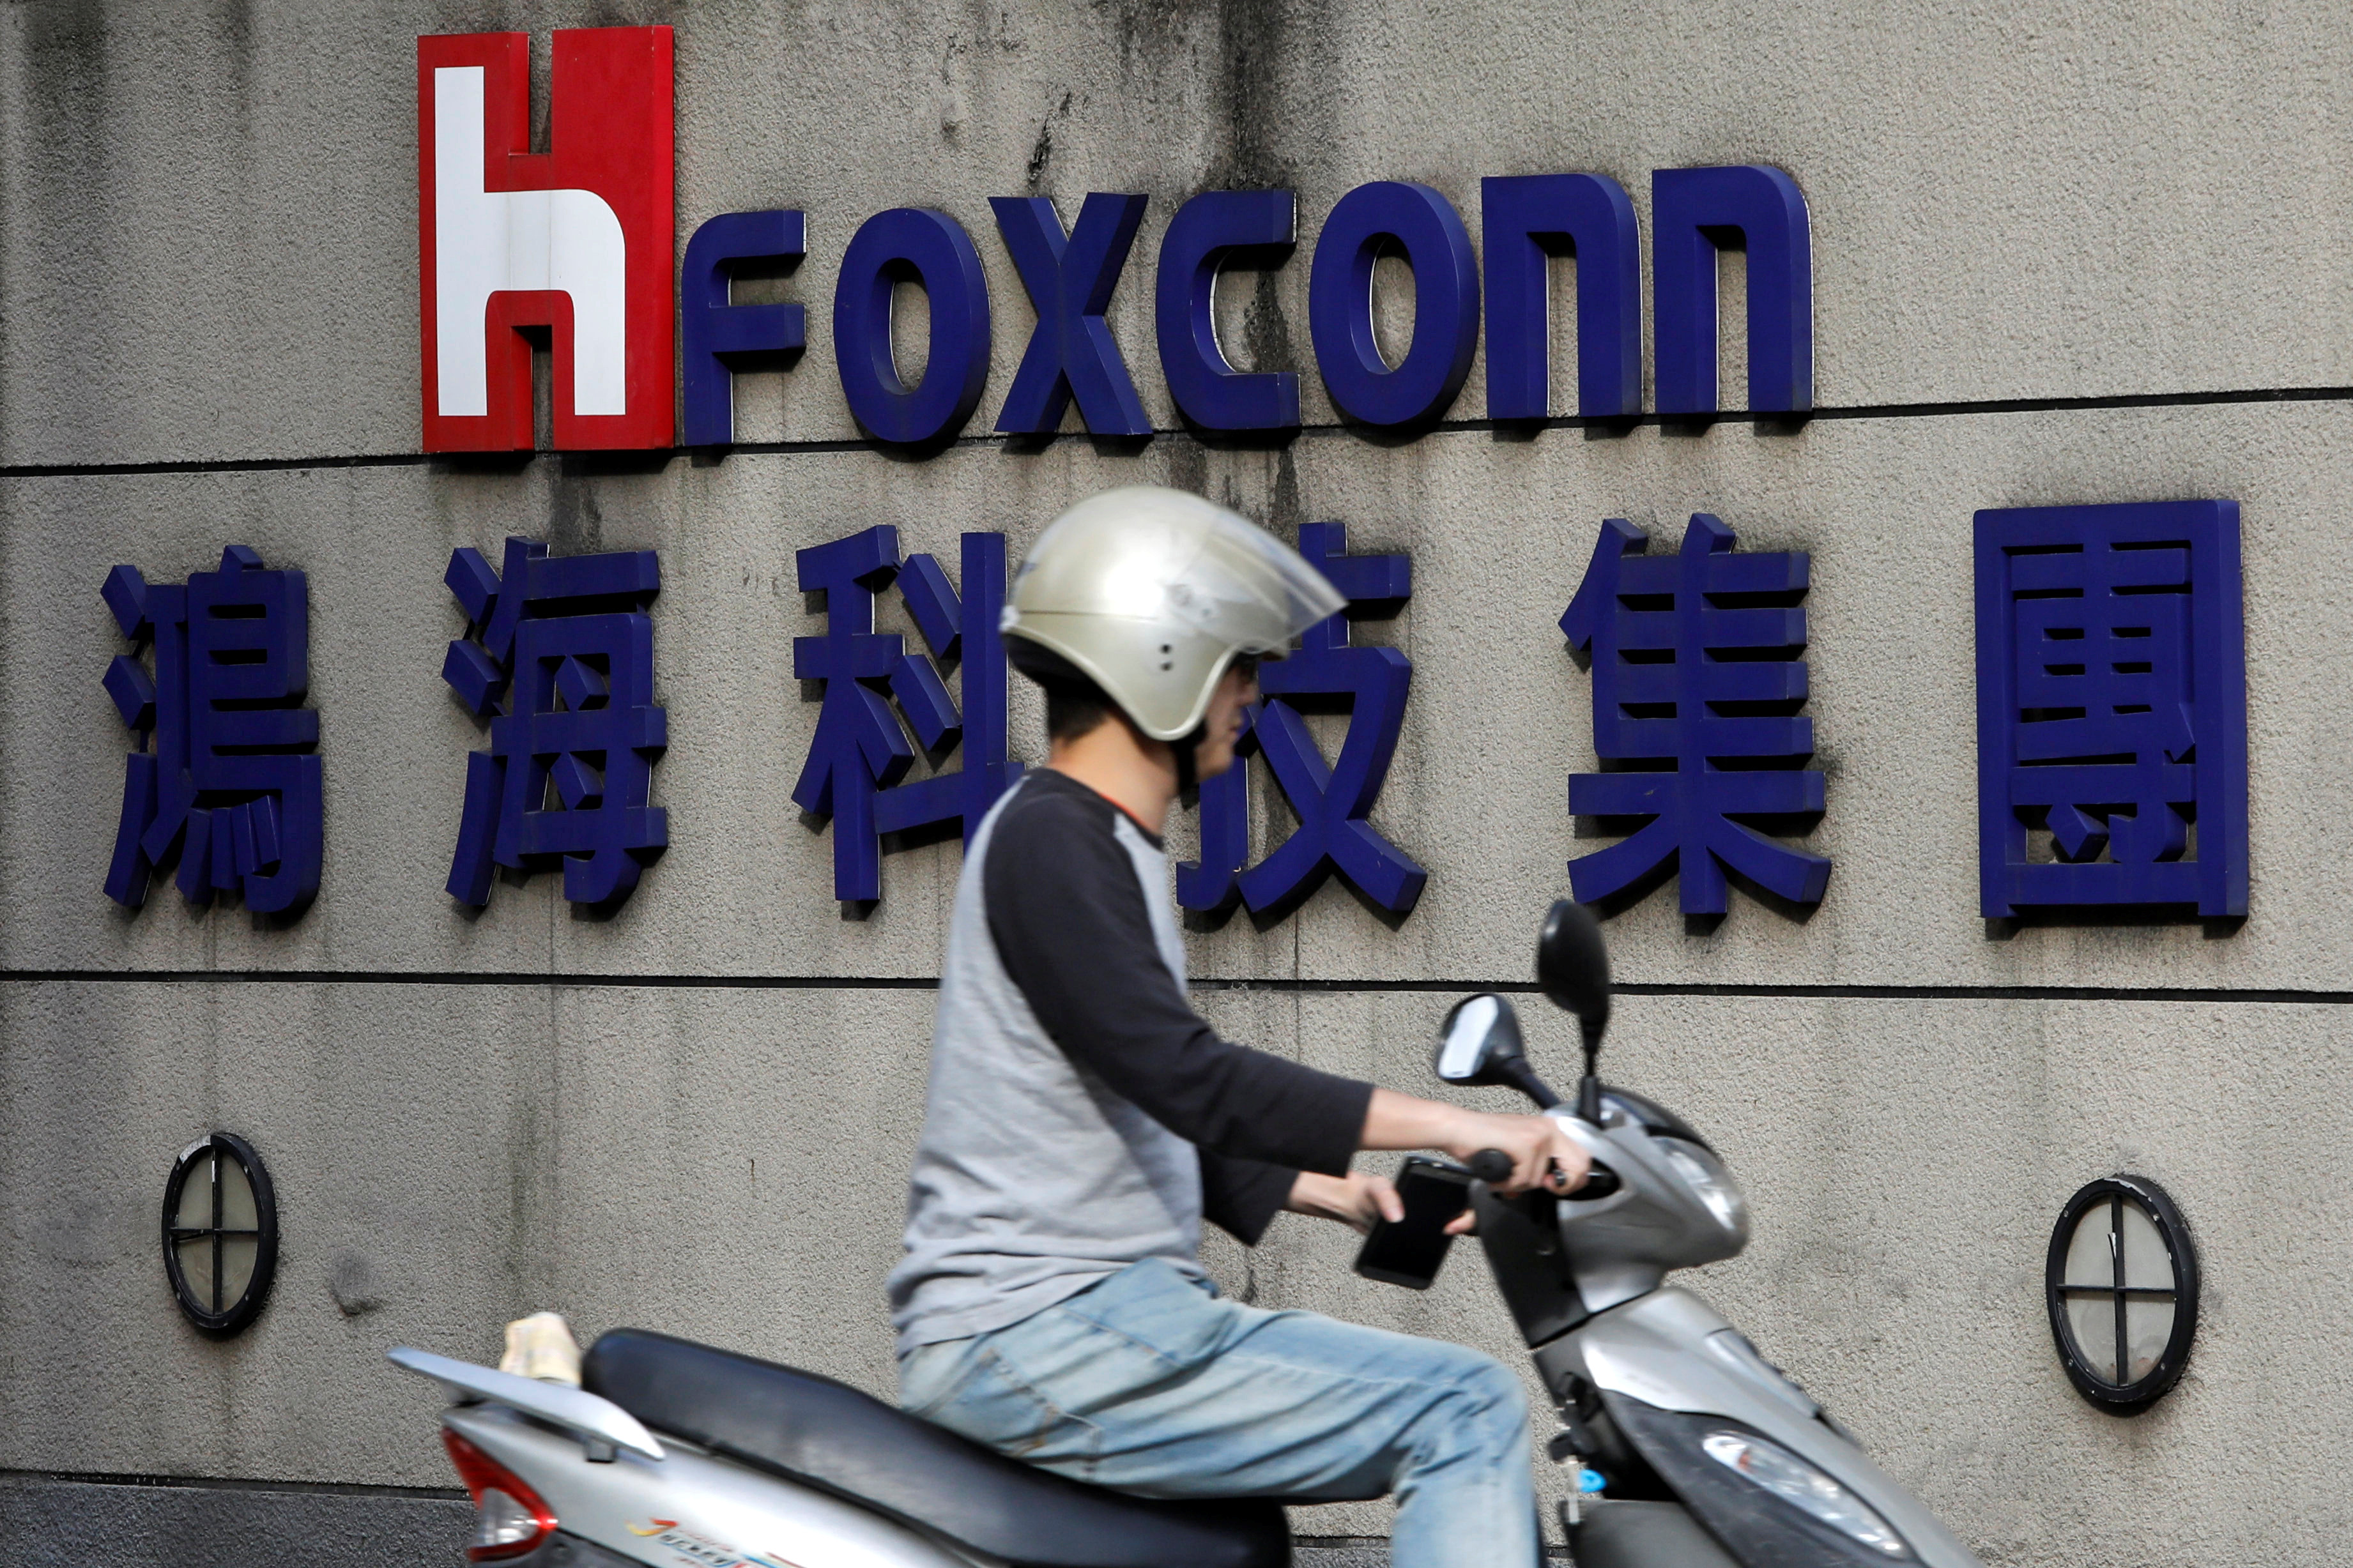 Un motociclista pasa frente al logotipo de Foxconn, el nombre comercial de Hon Hai Precision Industry, en Taipéi.